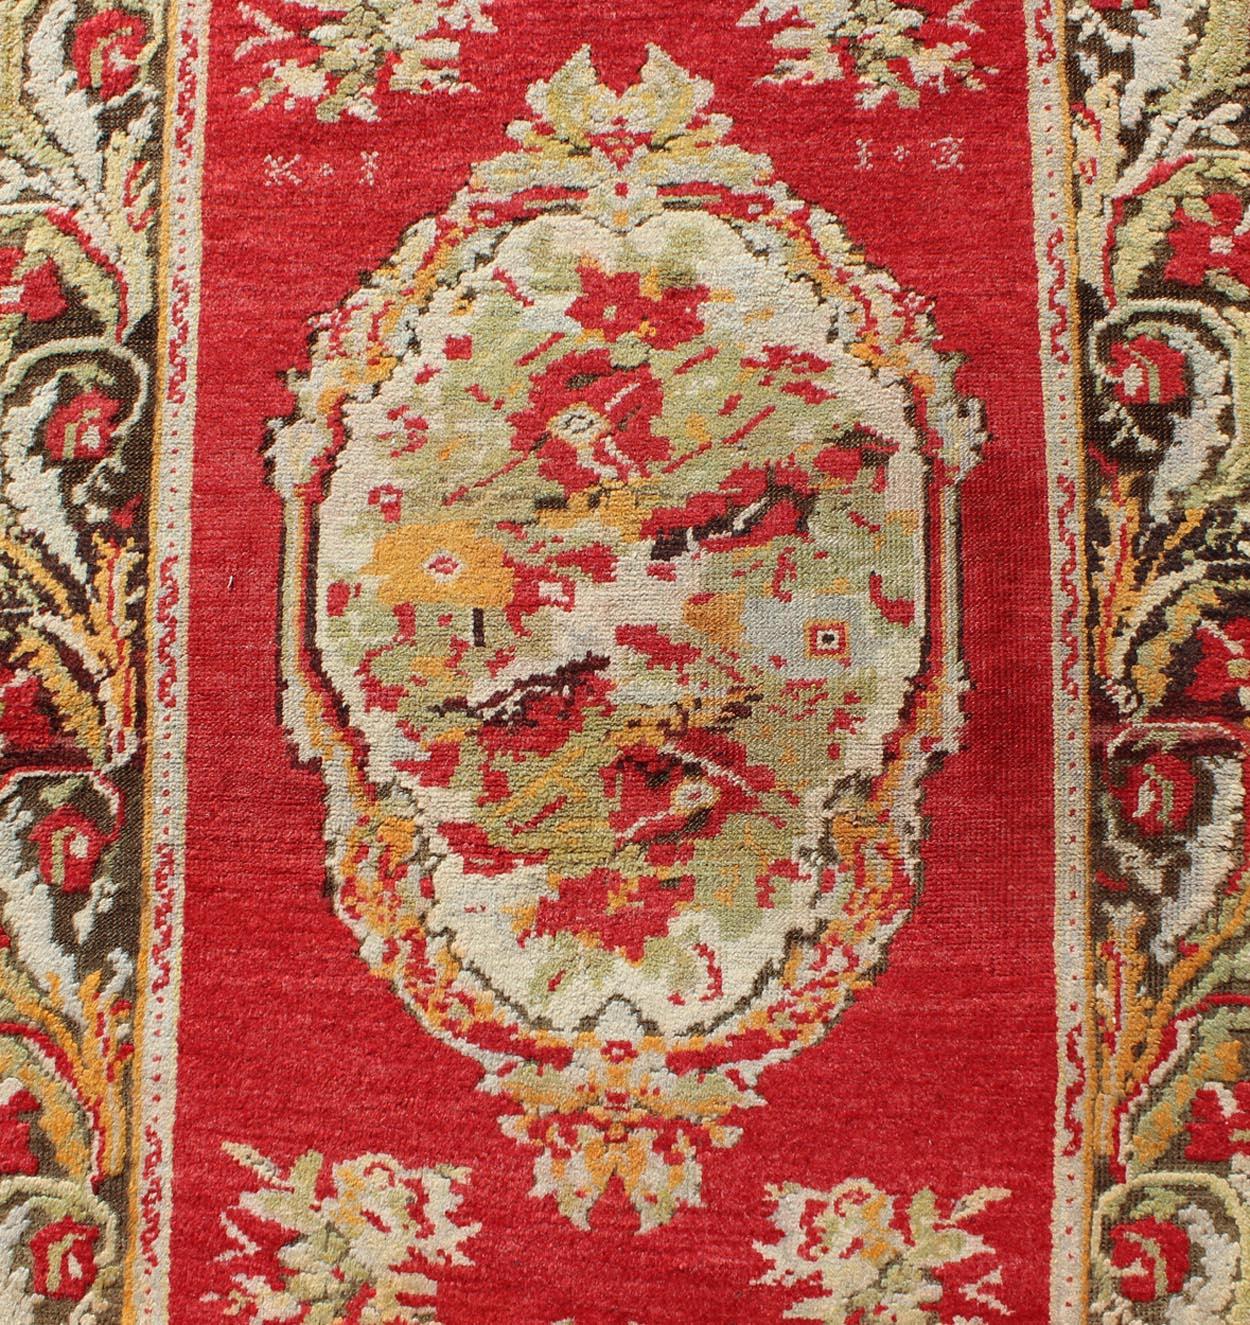 Wool Antique Turkish Oushak Runner with Karabagh Design & Ornate Floral Medallions For Sale